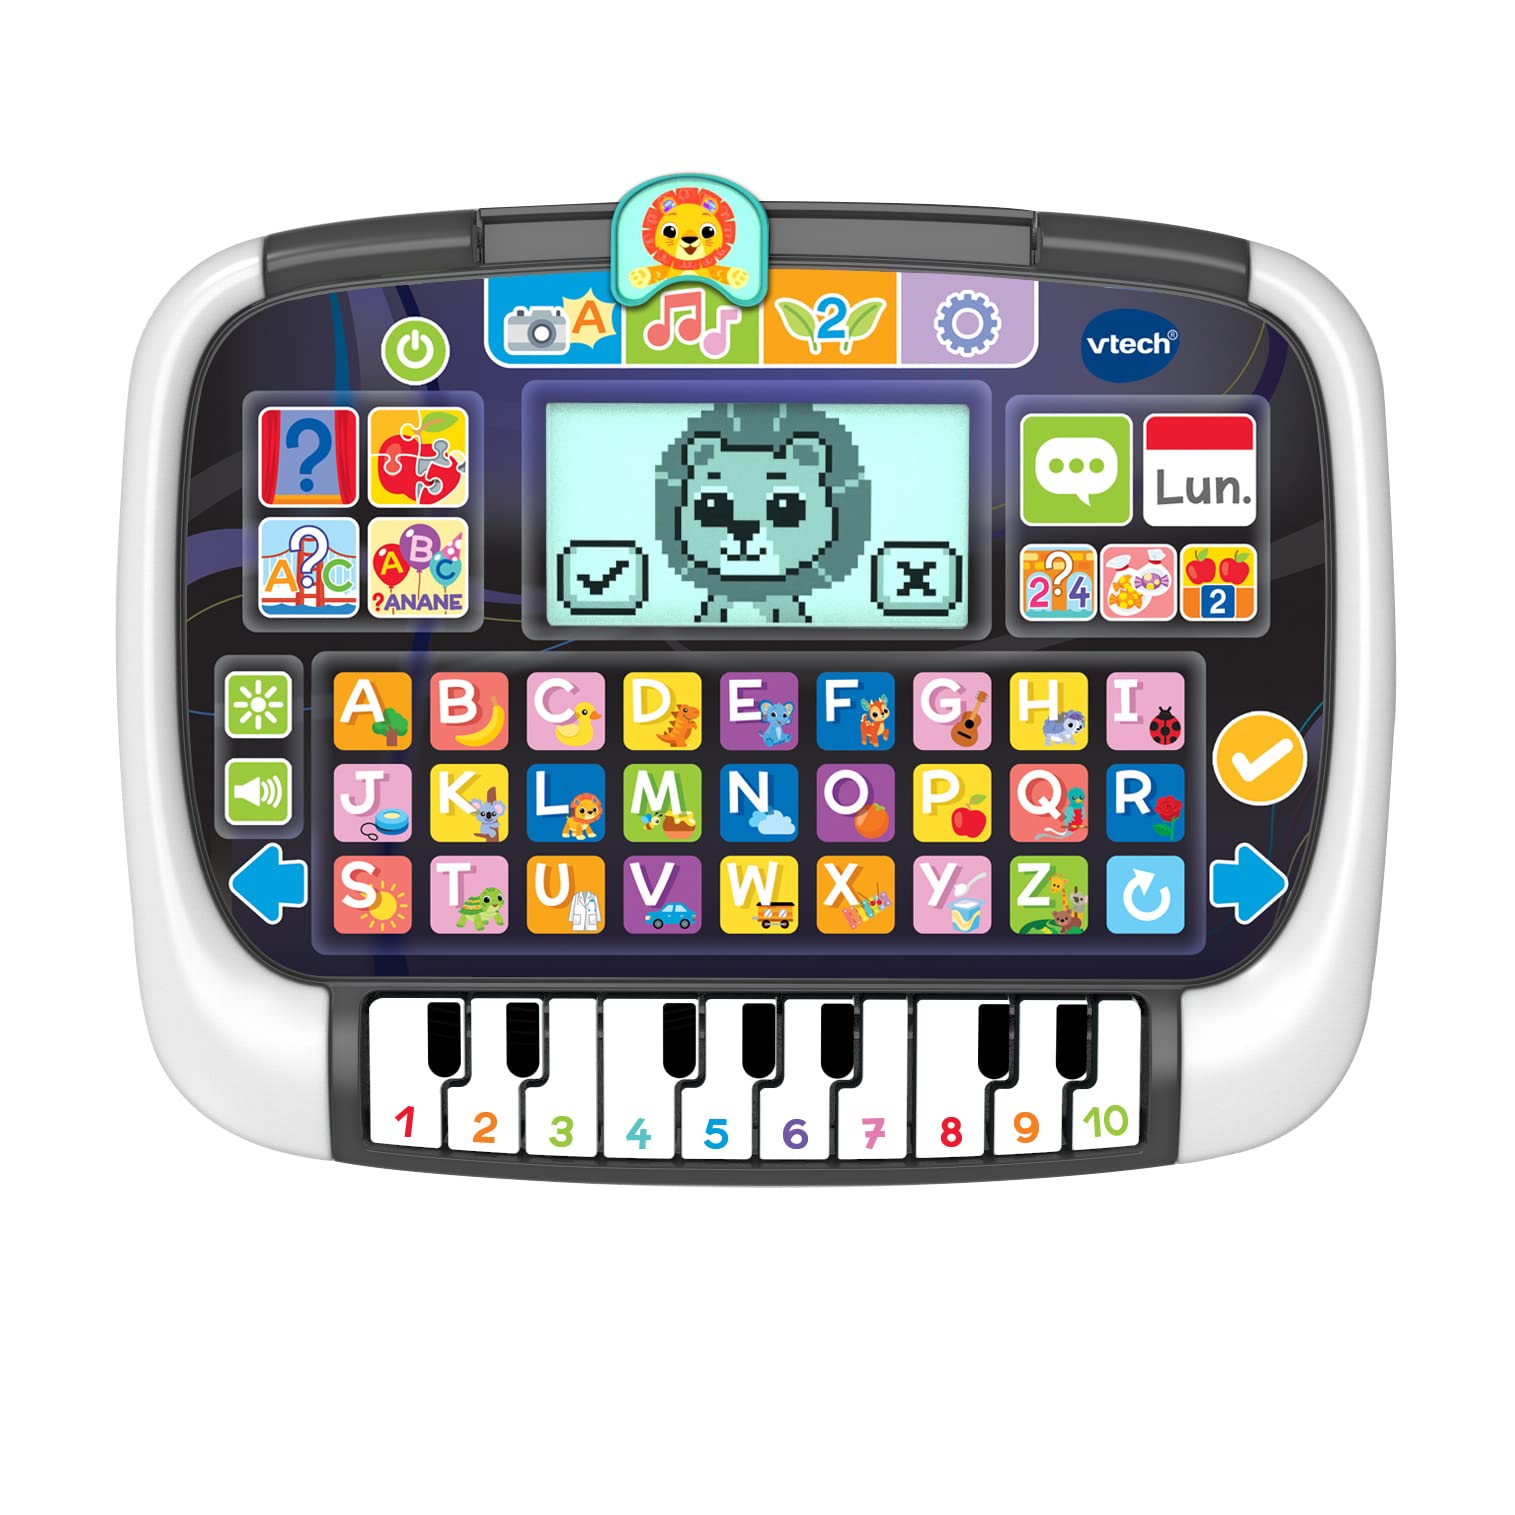 grand escompte VTech Panneau éducatif avec Piano Tablette Enfant Multi-app, Jouets interactifs pour Enfants +2 Ans, Version ESP. FbyUDMc88 boutique en ligne